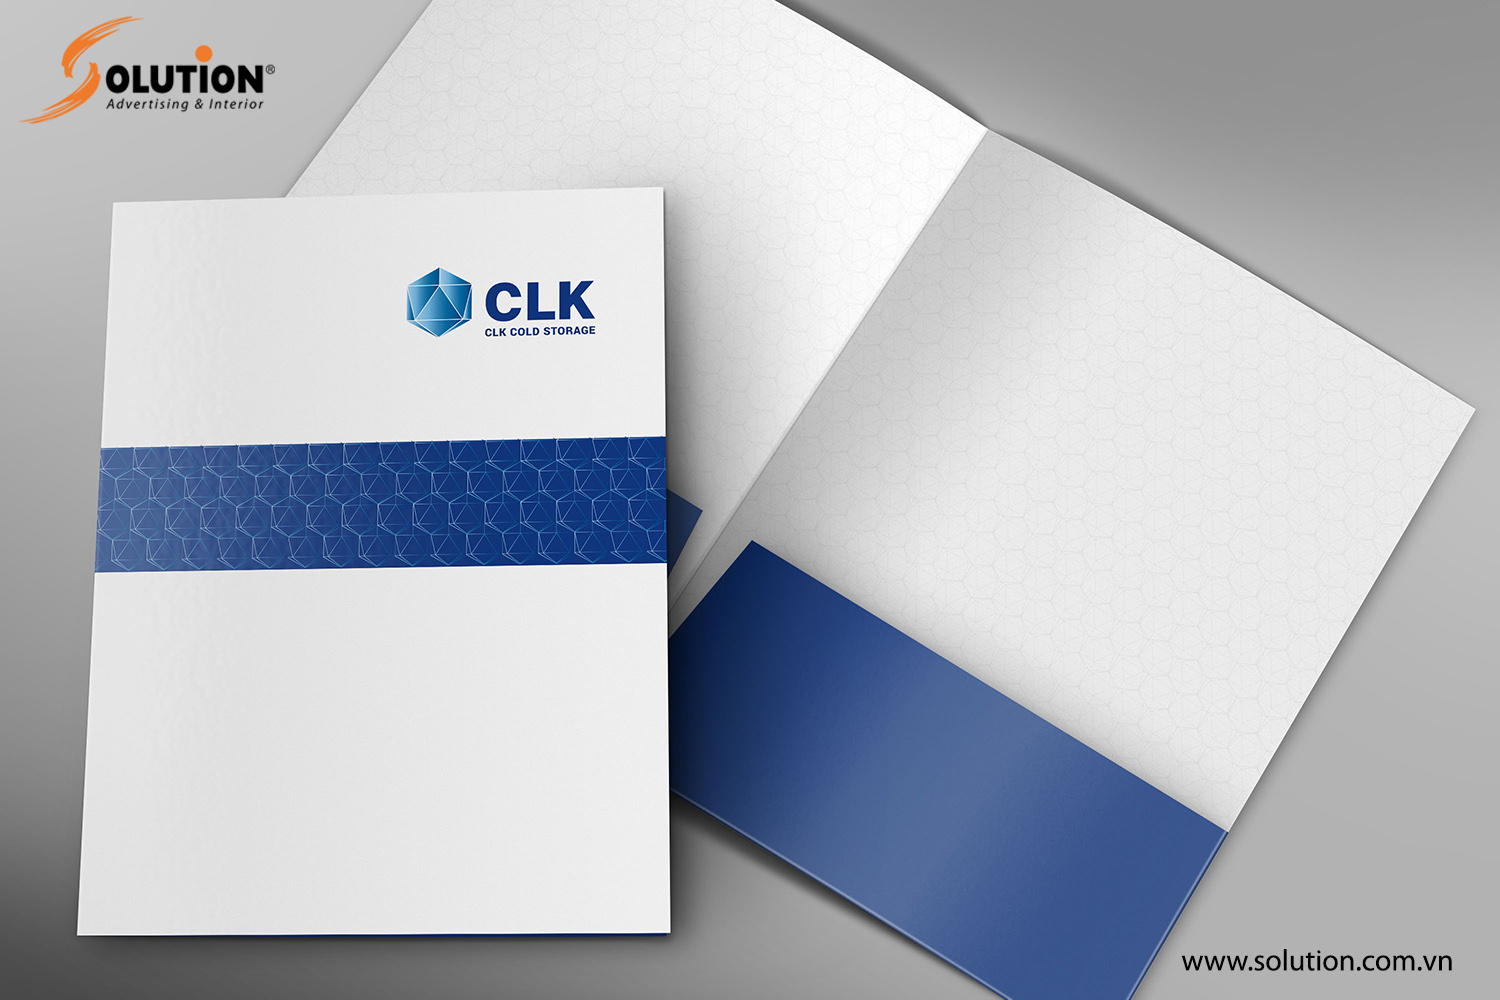 Mẫu thiết kế file tài liệu - Bộ nhận diện thương hiệu Công ty CLK